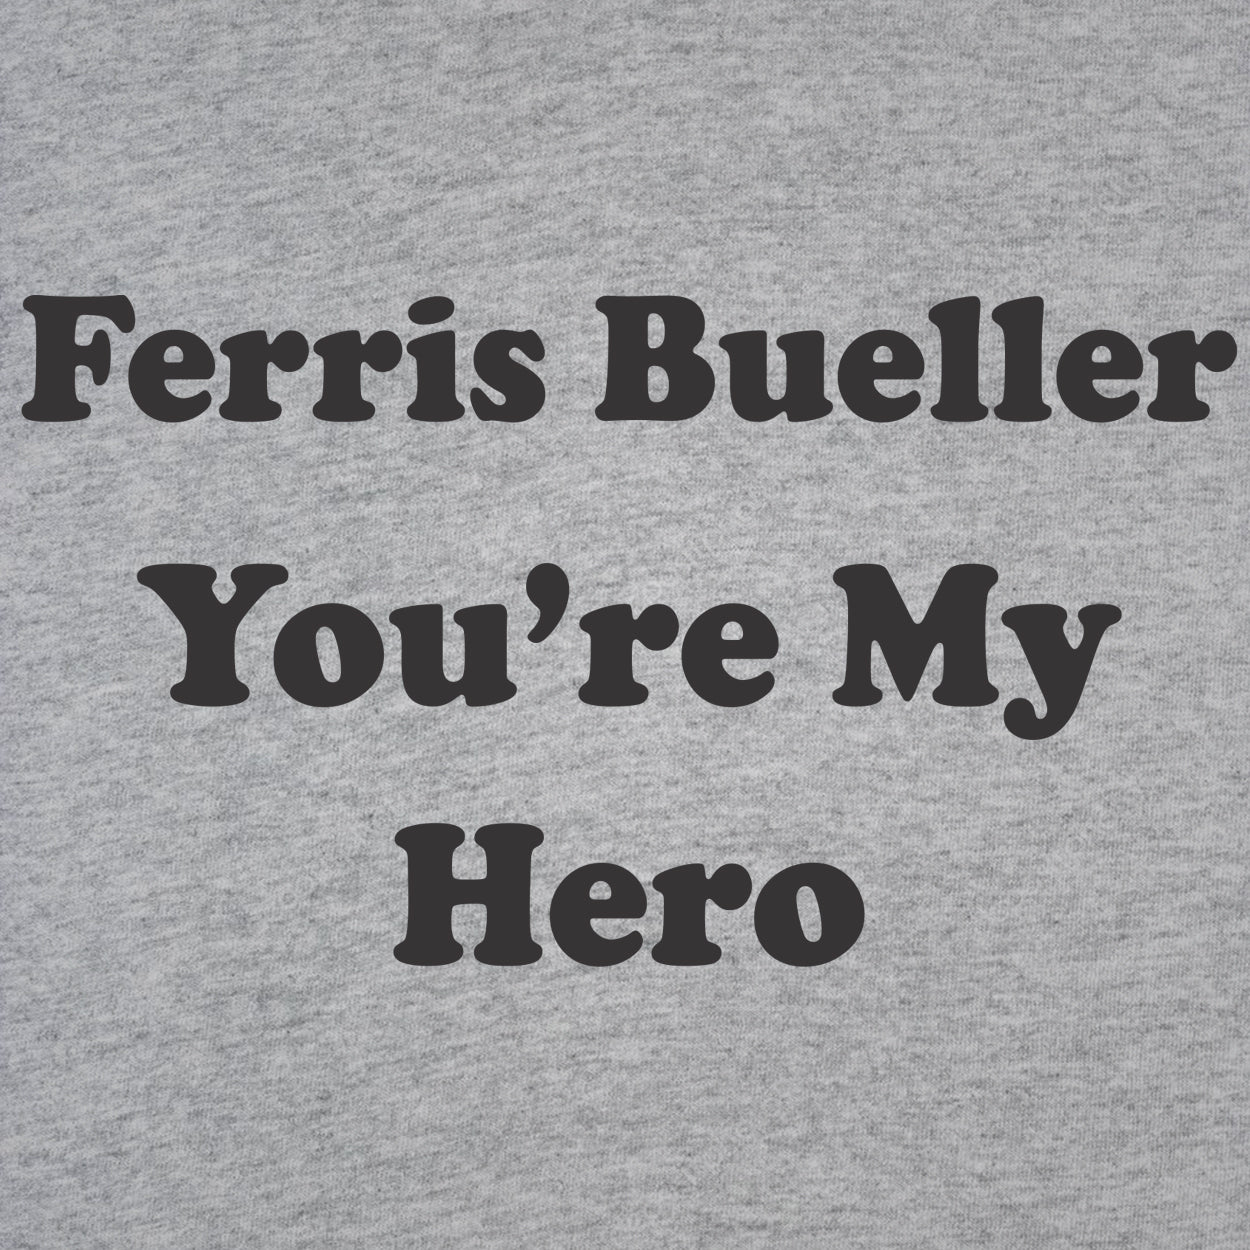 Ferris Bueller You're My Hero - DonkeyTees